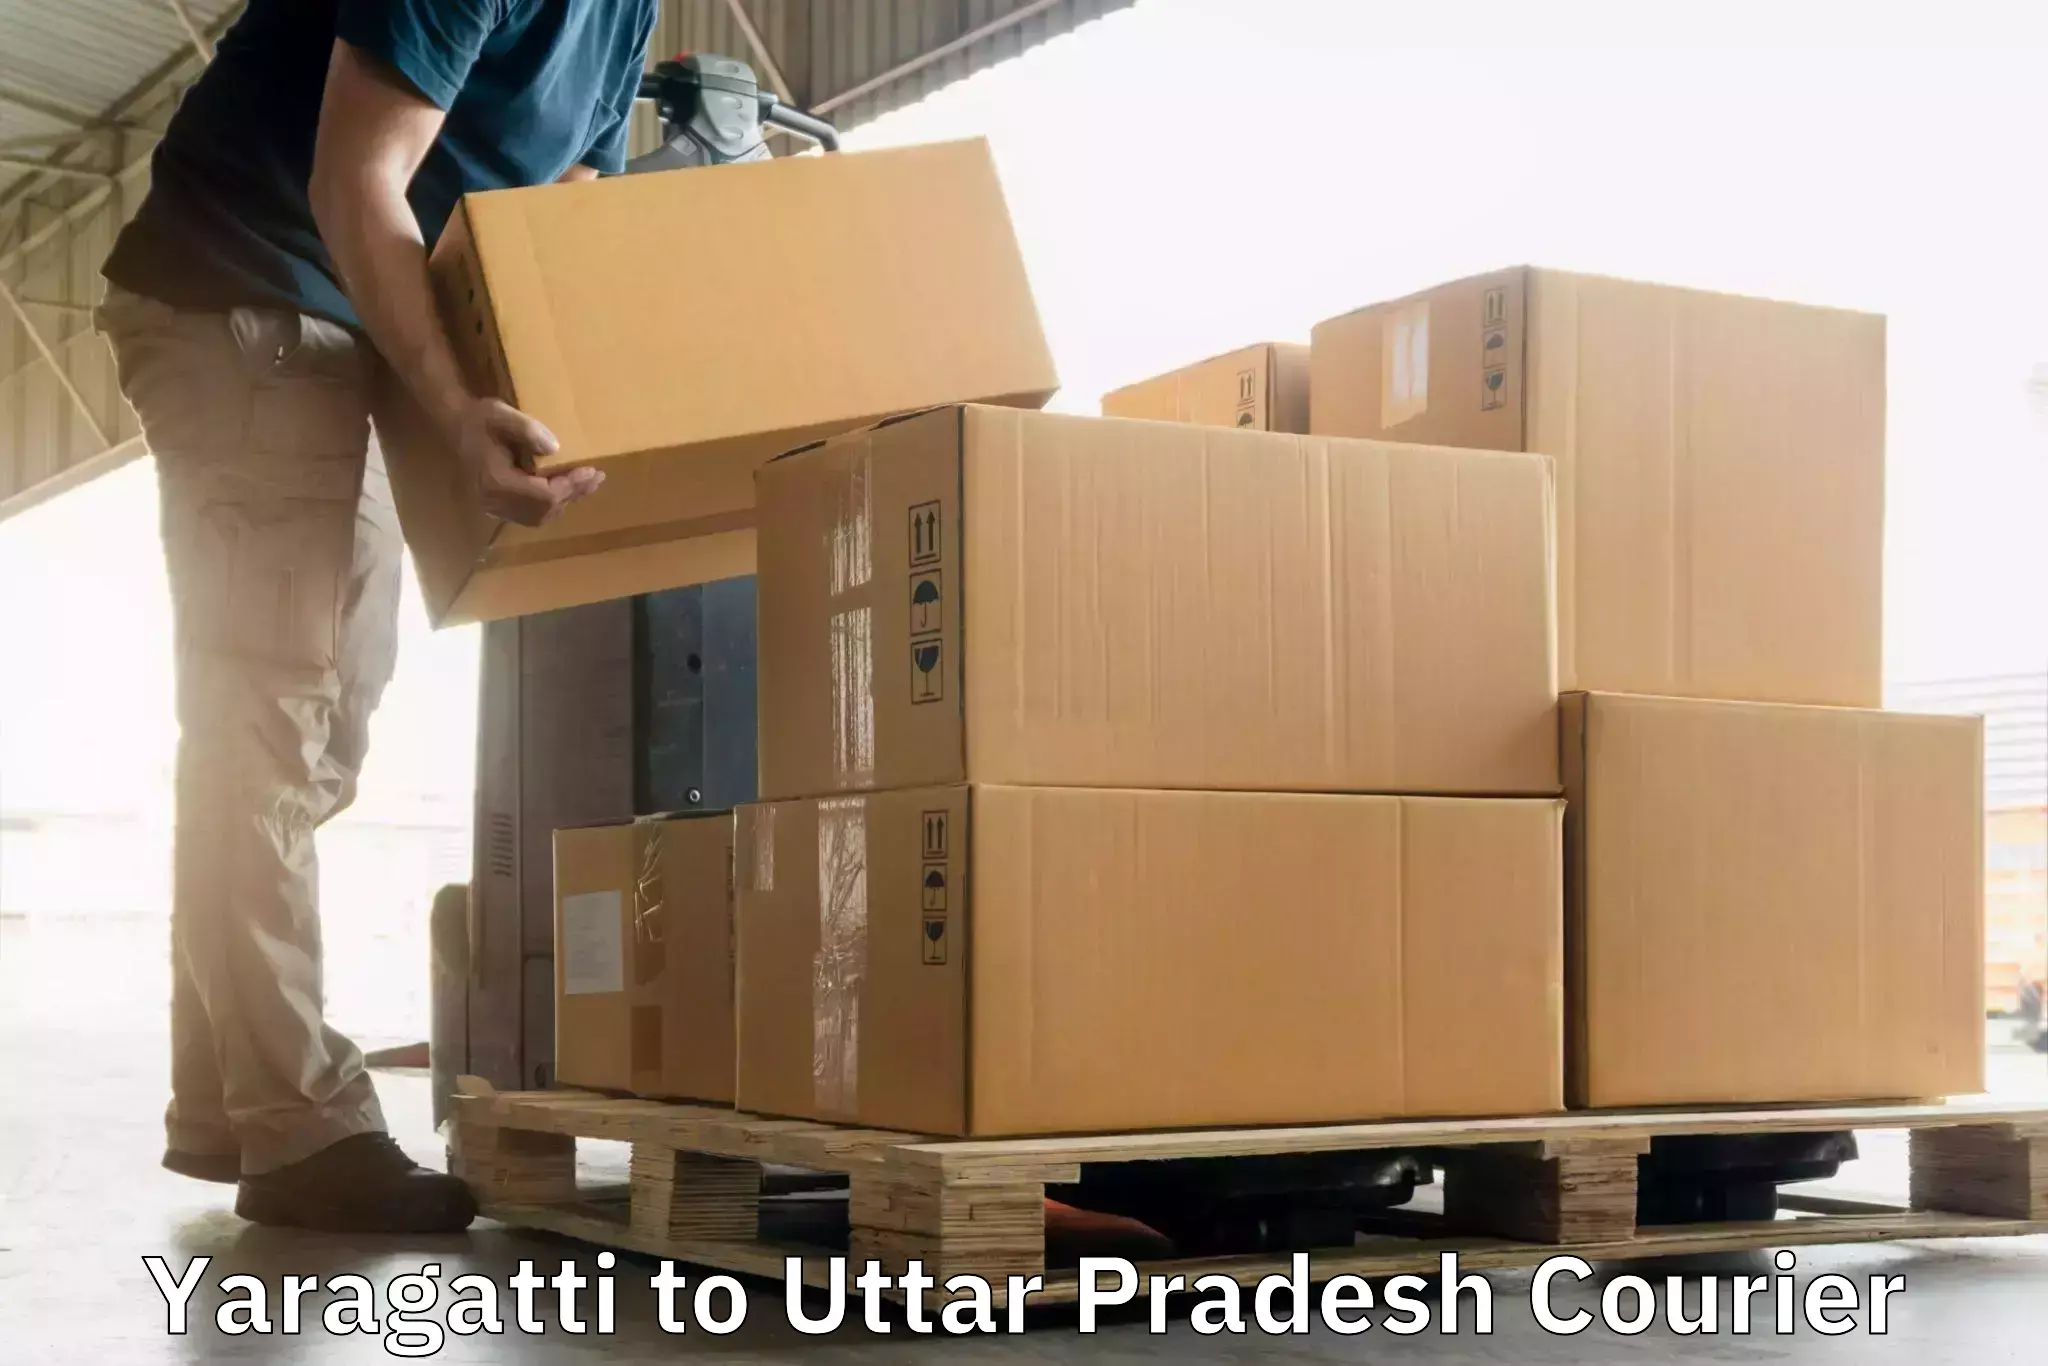 Courier membership in Yaragatti to Uttar Pradesh